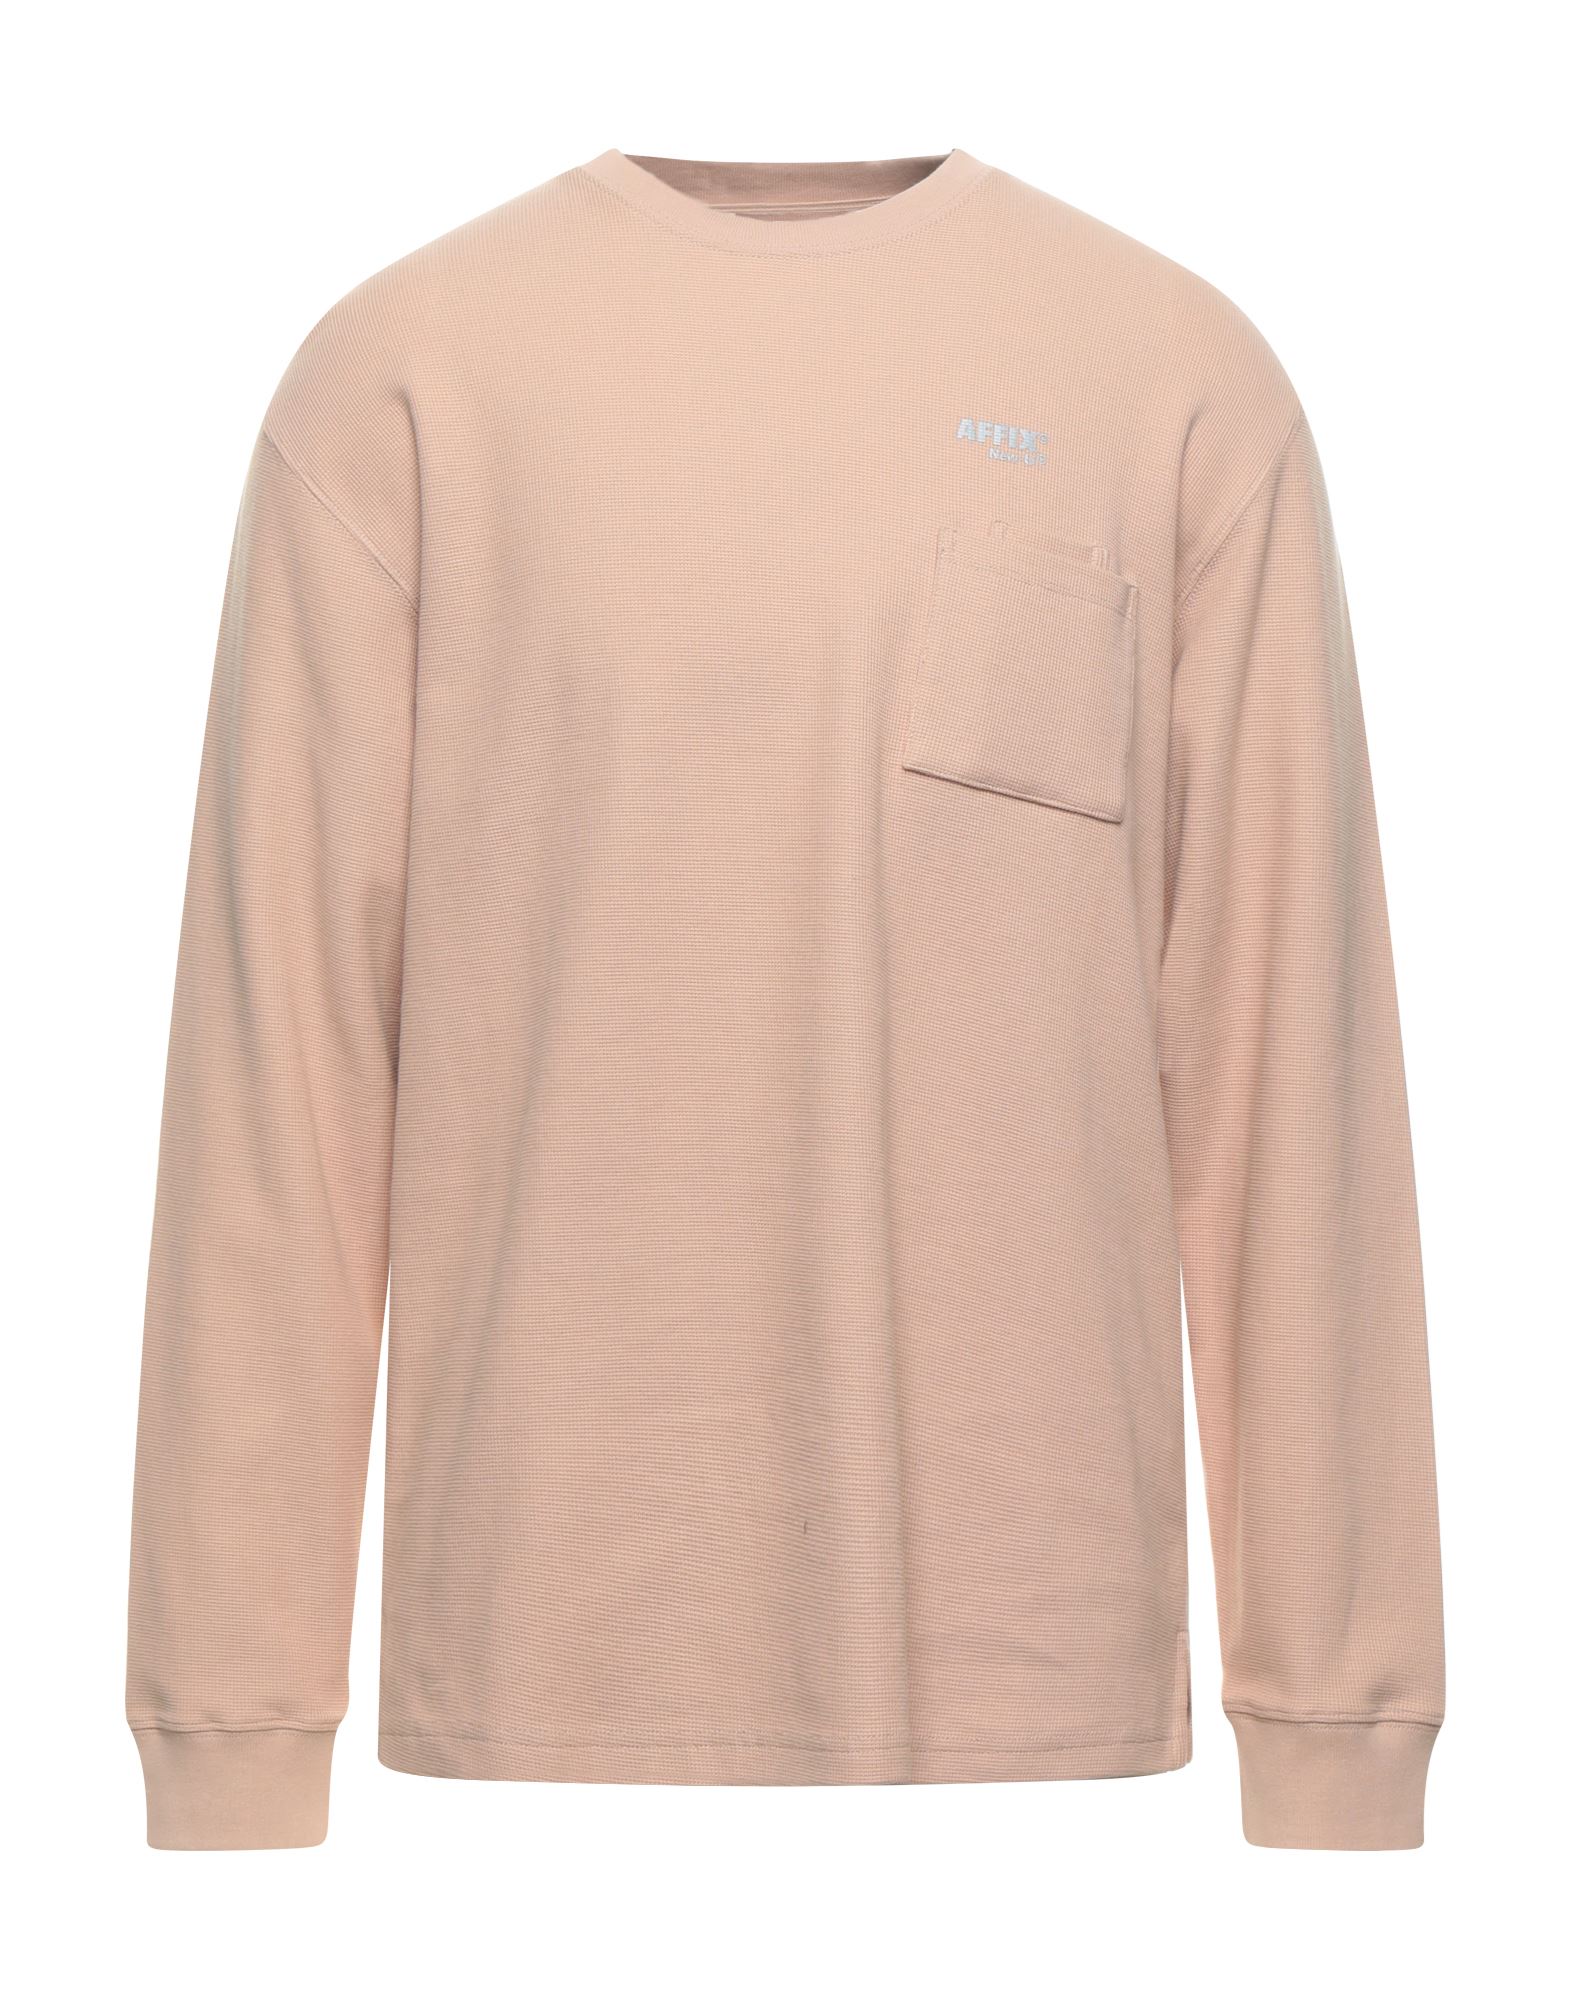 Affix Sweatshirts In Light Brown